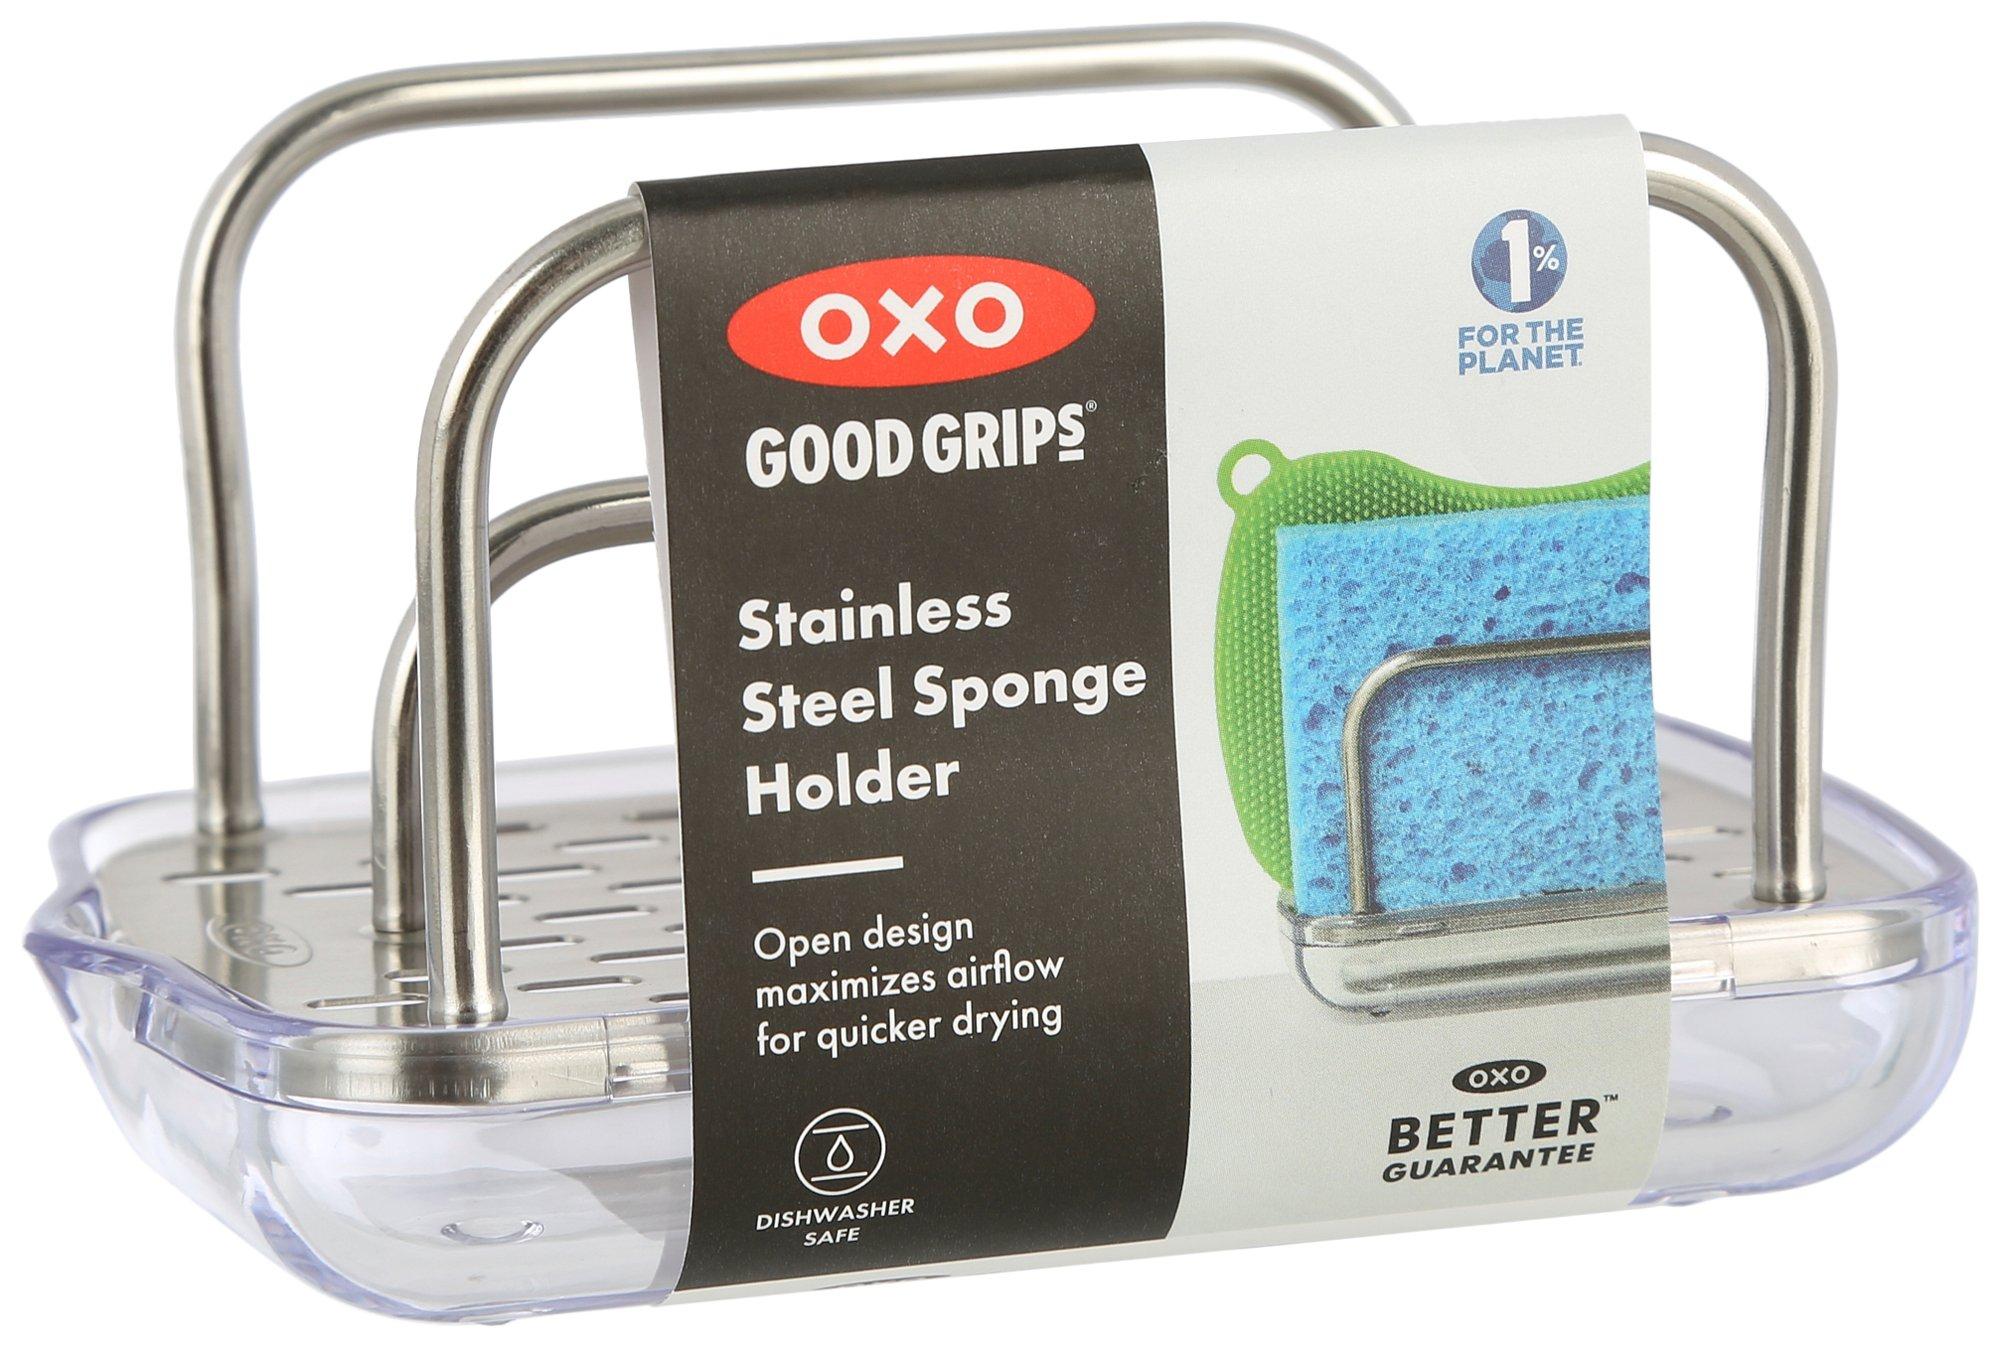 Good Grips Stainless Steel Sponge Holder